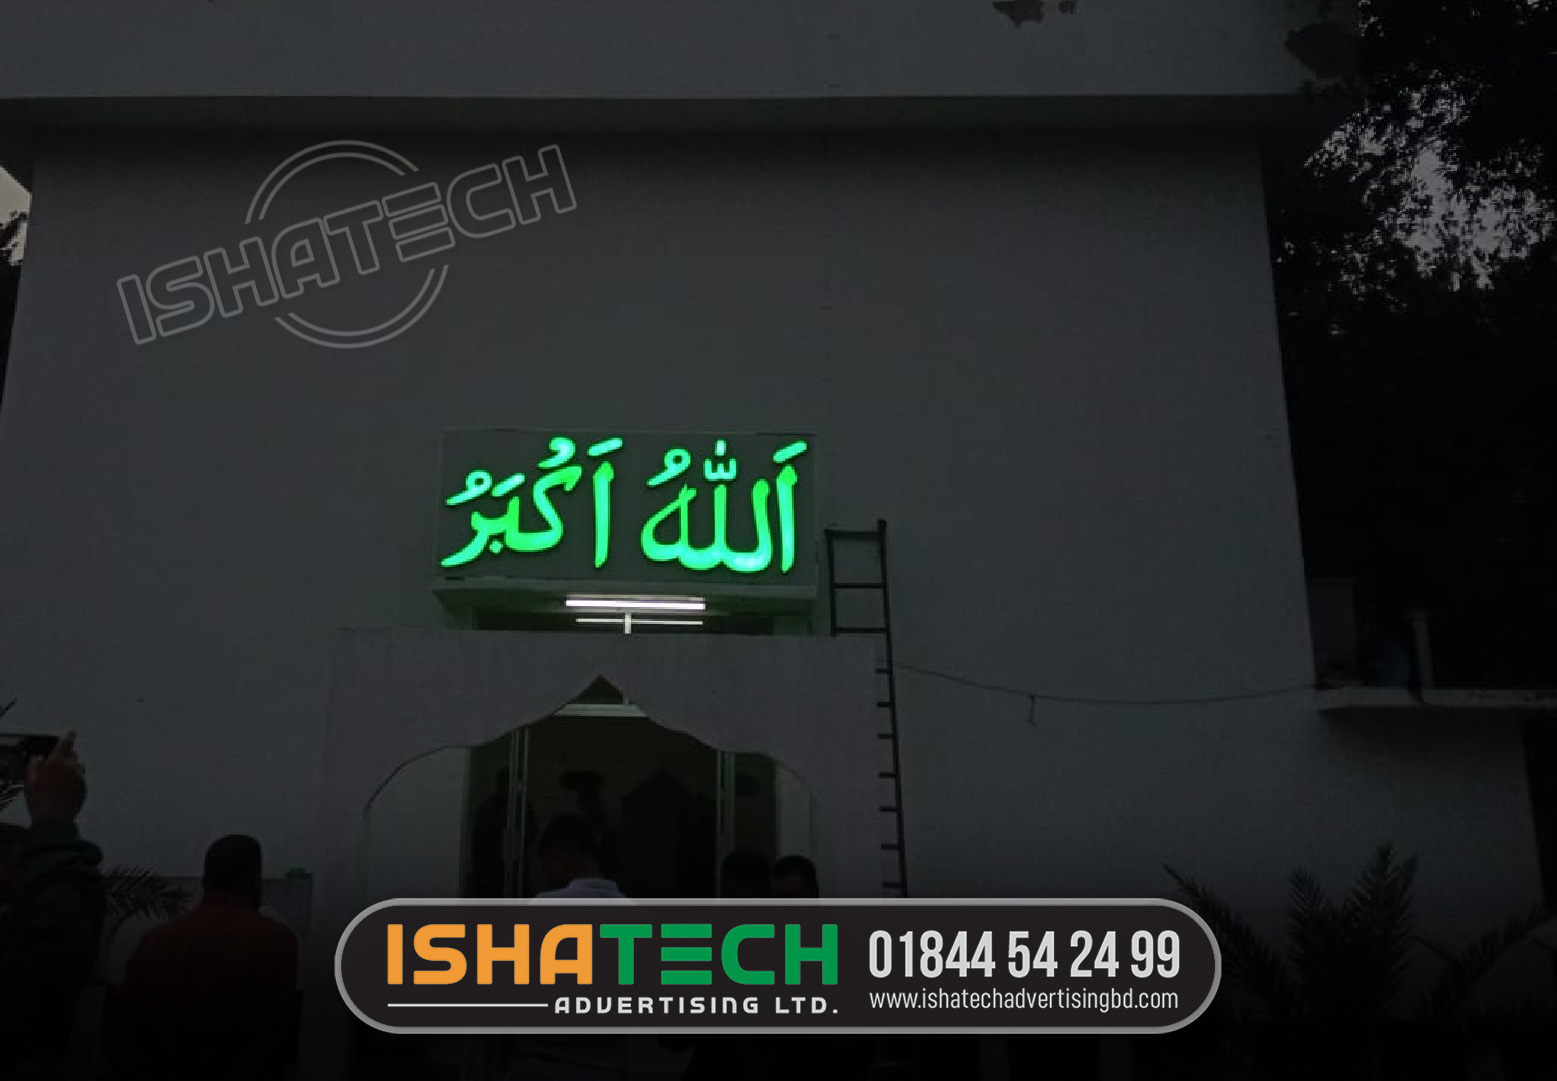 Mosque Acrylic 3D Letter Signage Shop